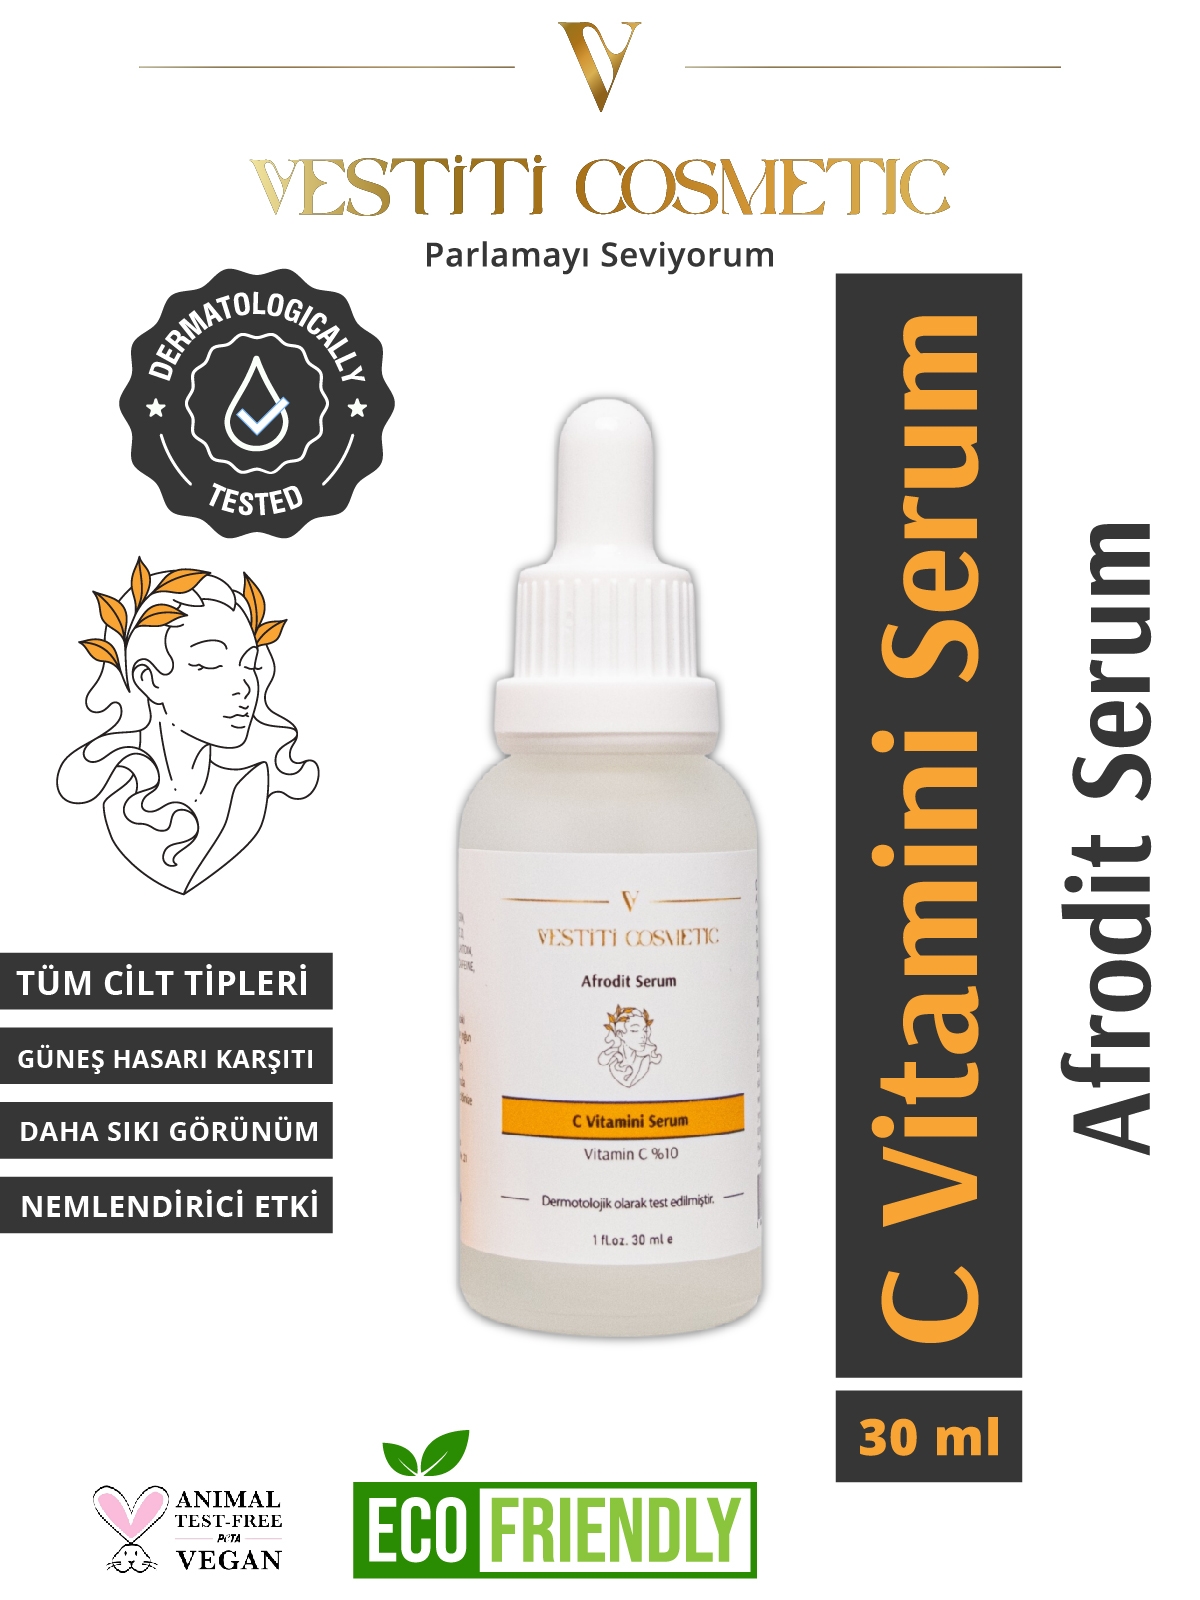 AFRODİT SERUM Vitamin C %10 Serum